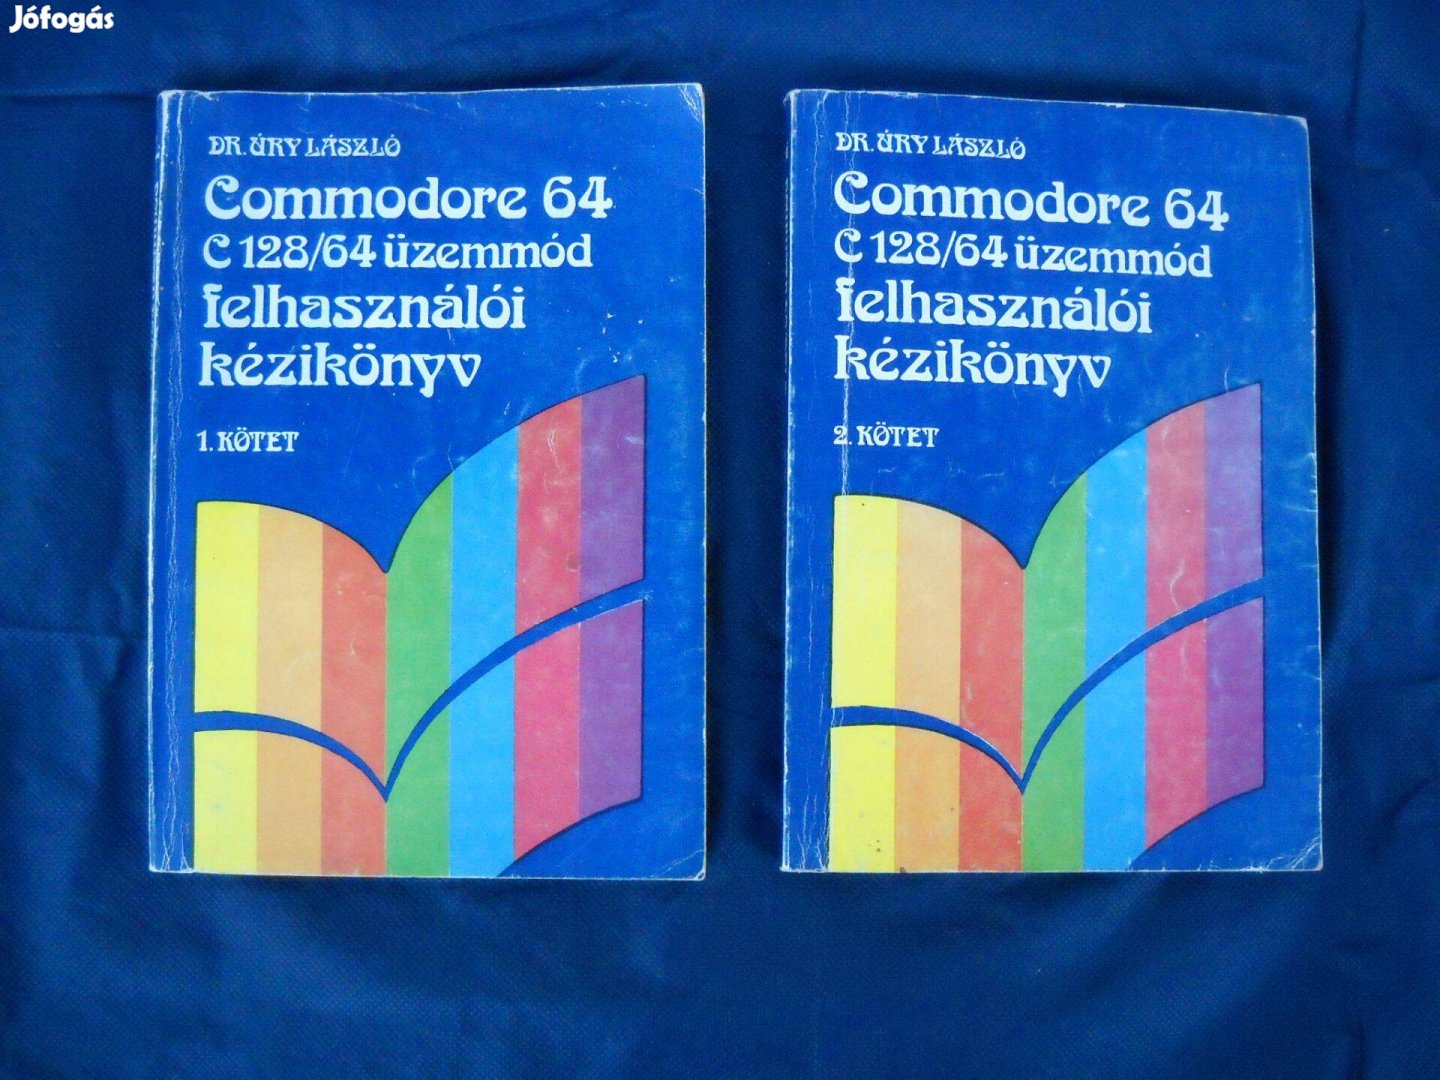 Commodore C128/64 kézikönyv 1.-2. kötet